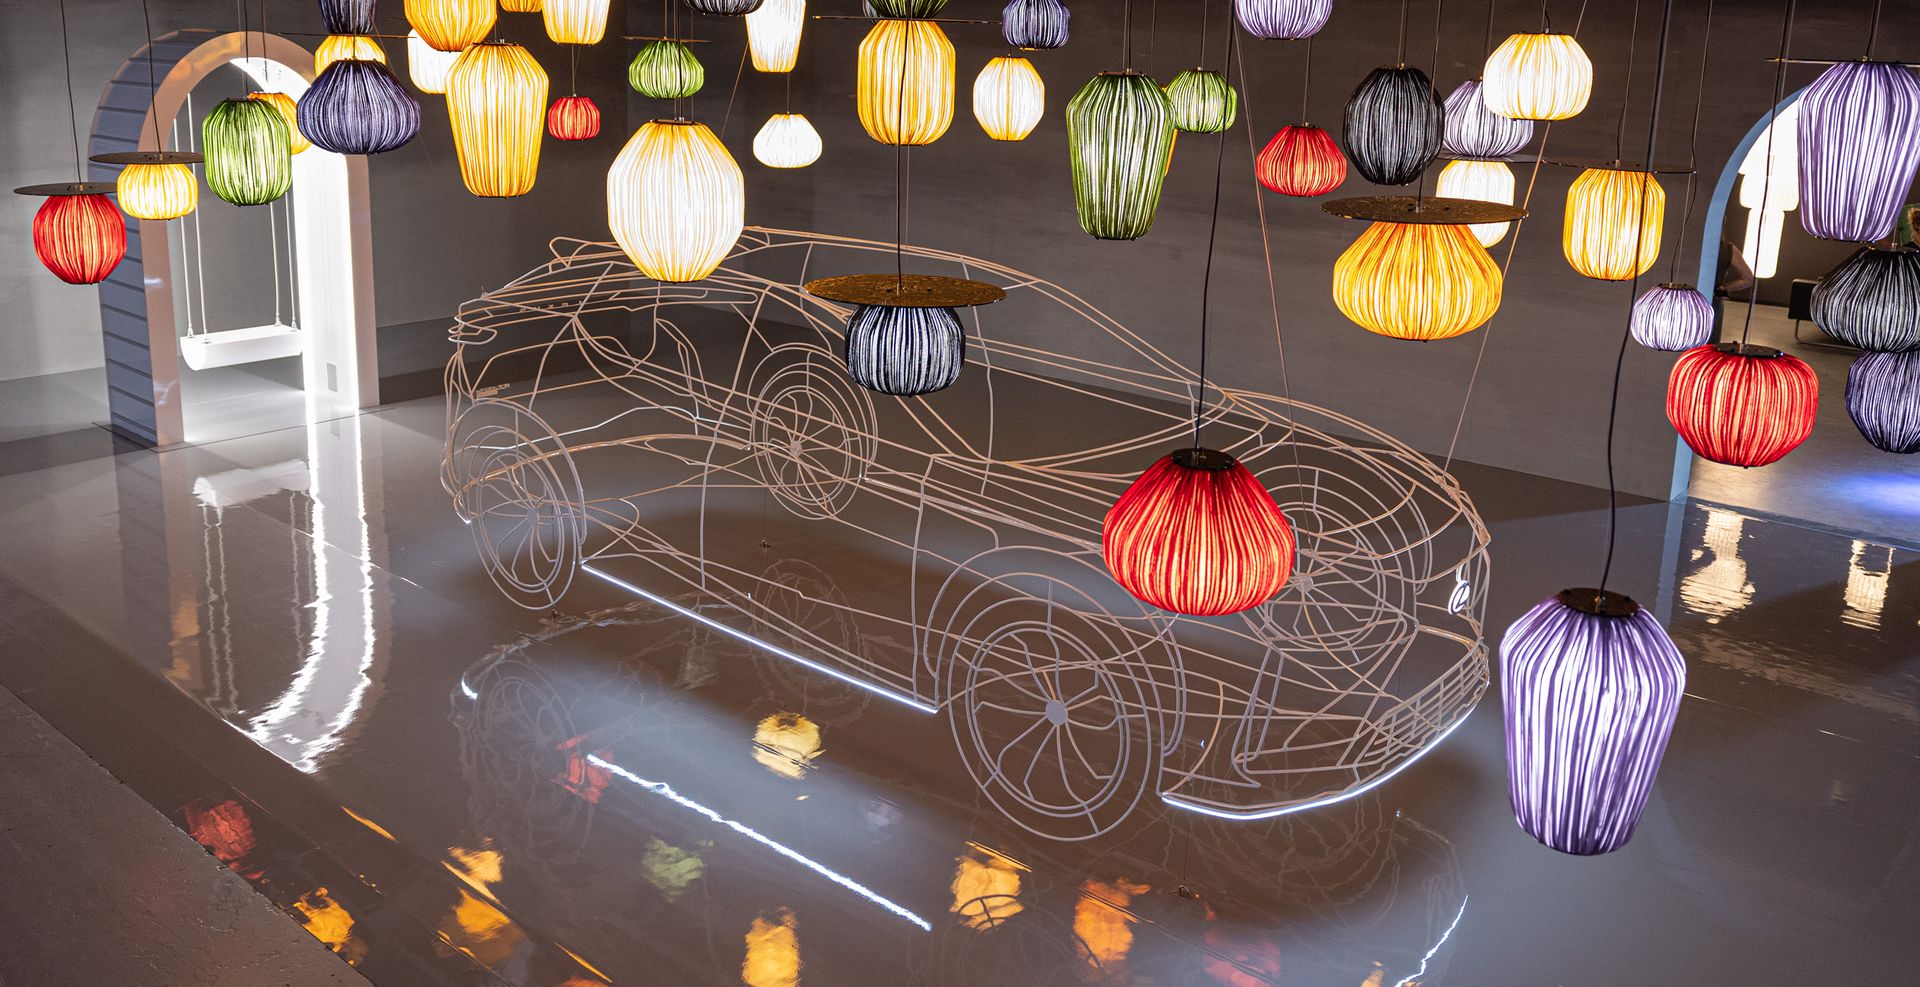 Lexus Showcases Amazing Design at Milan Design Week